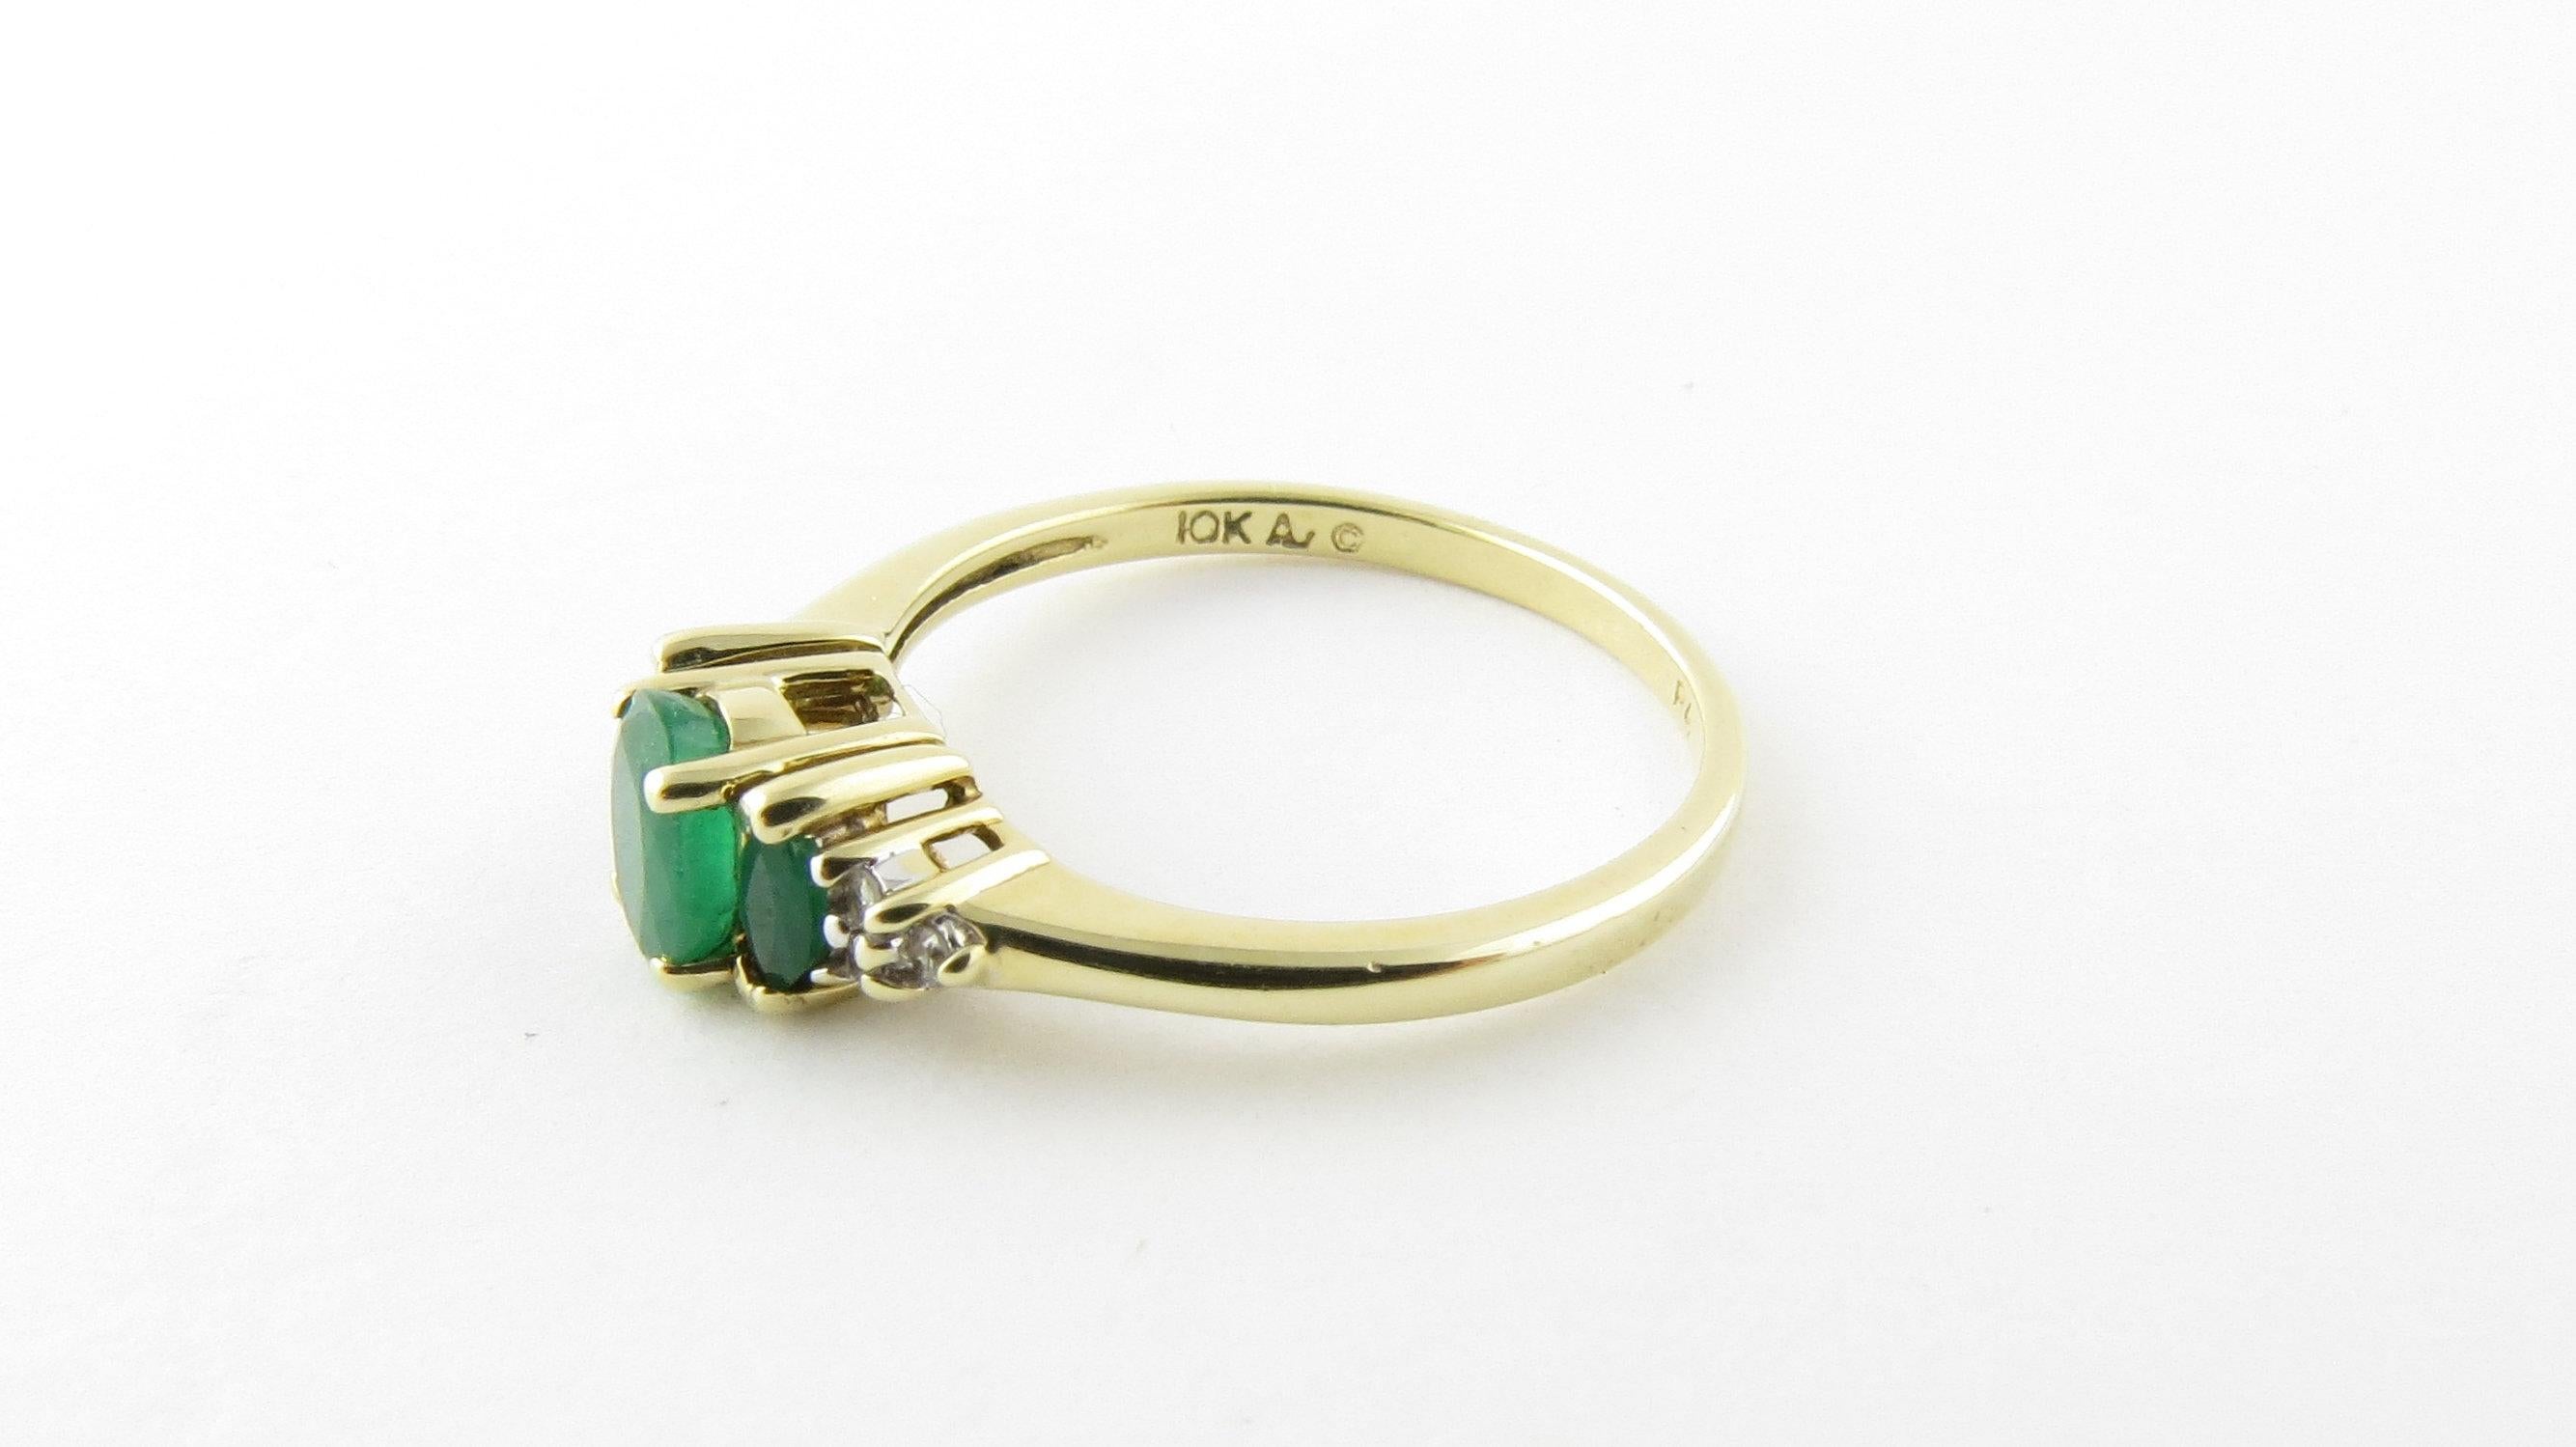 10 Karat Yellow Gold Genuine Emerald and Diamond Ring 2